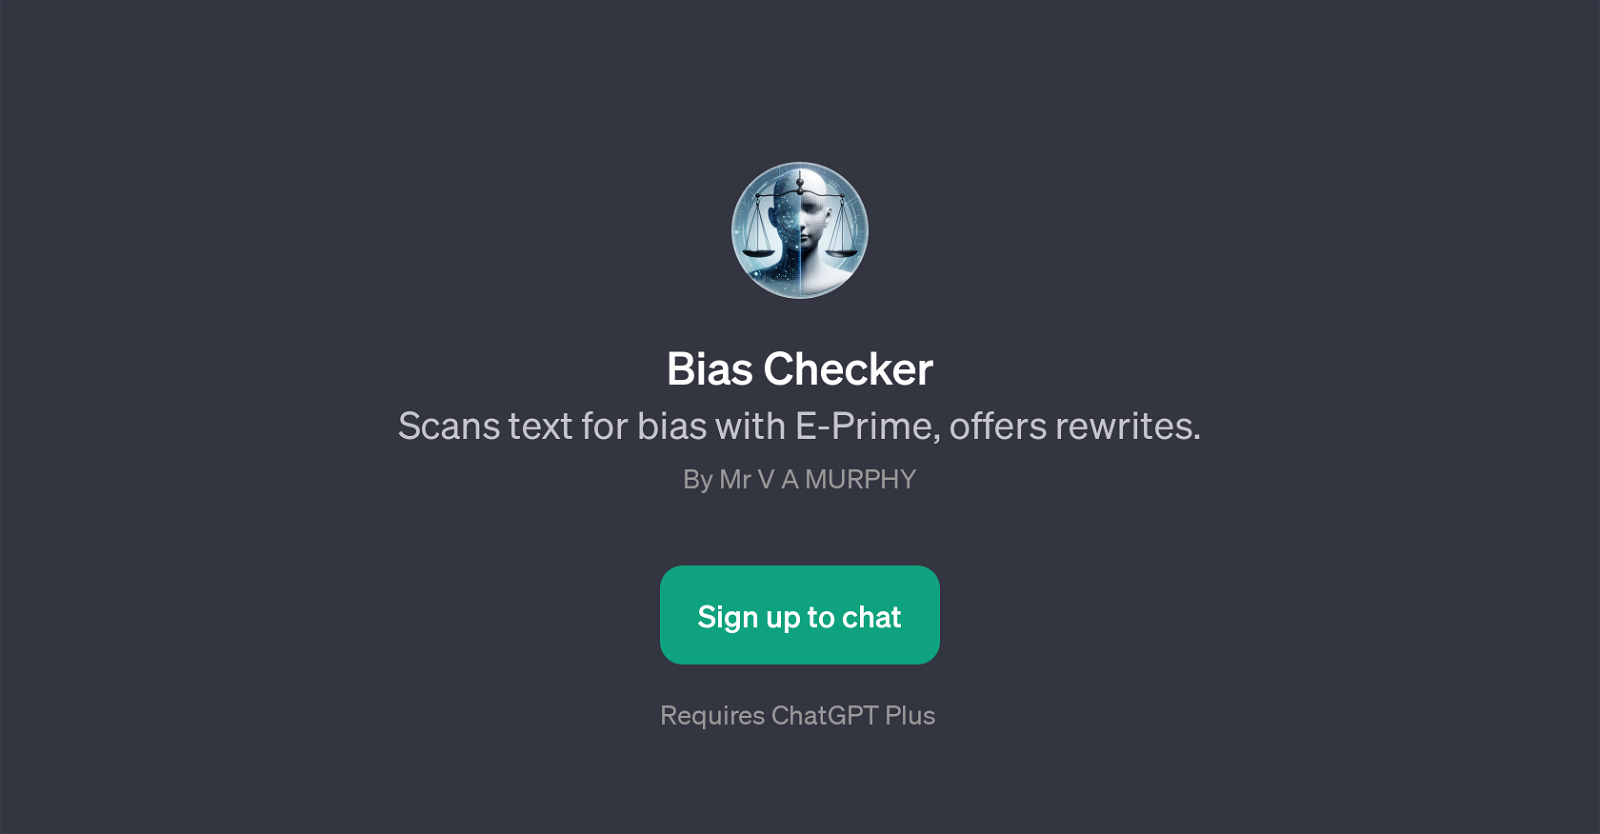 Bias Checker website